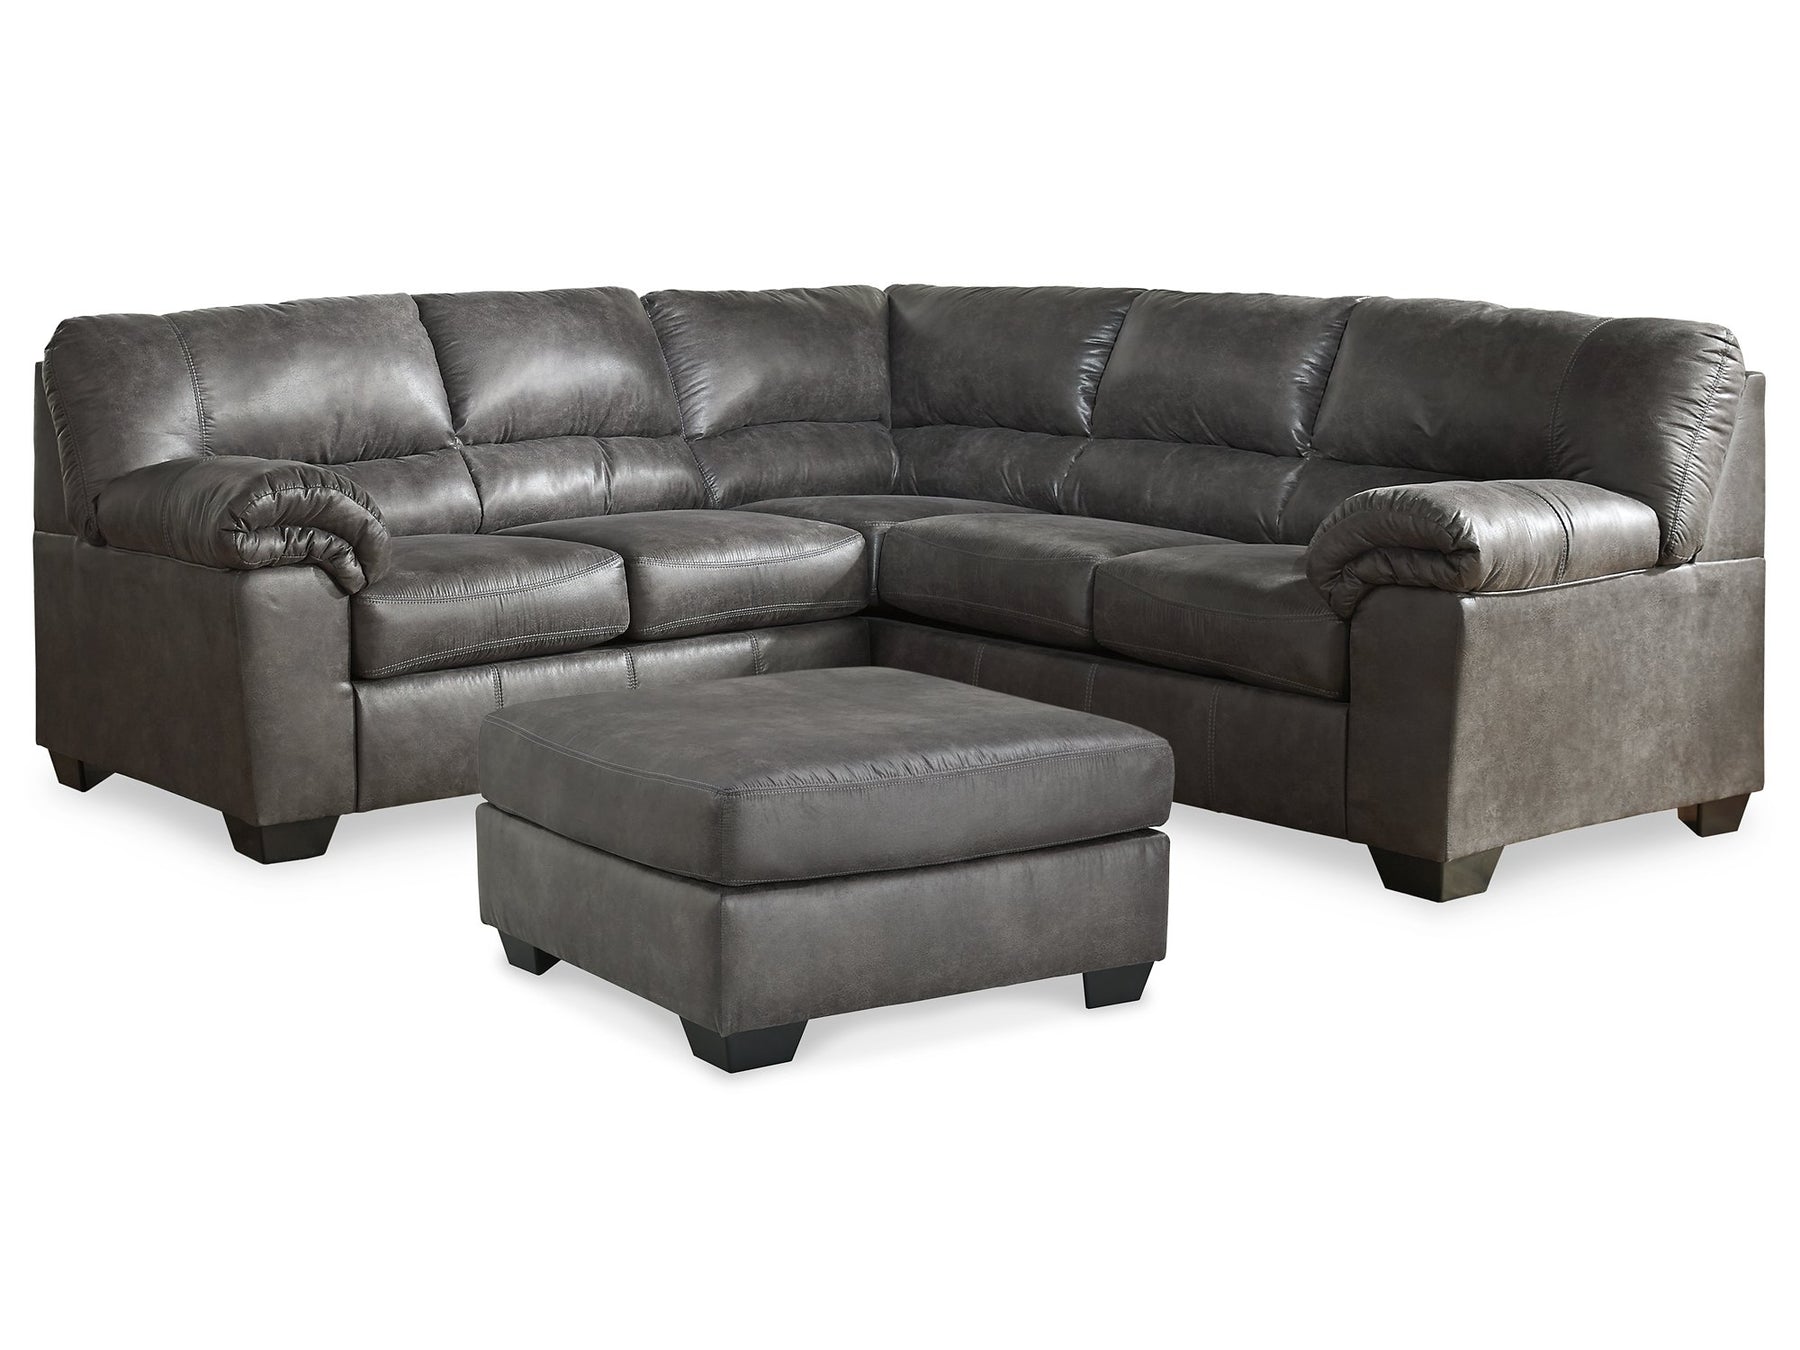 Bladen Living Room Set - Half Price Furniture